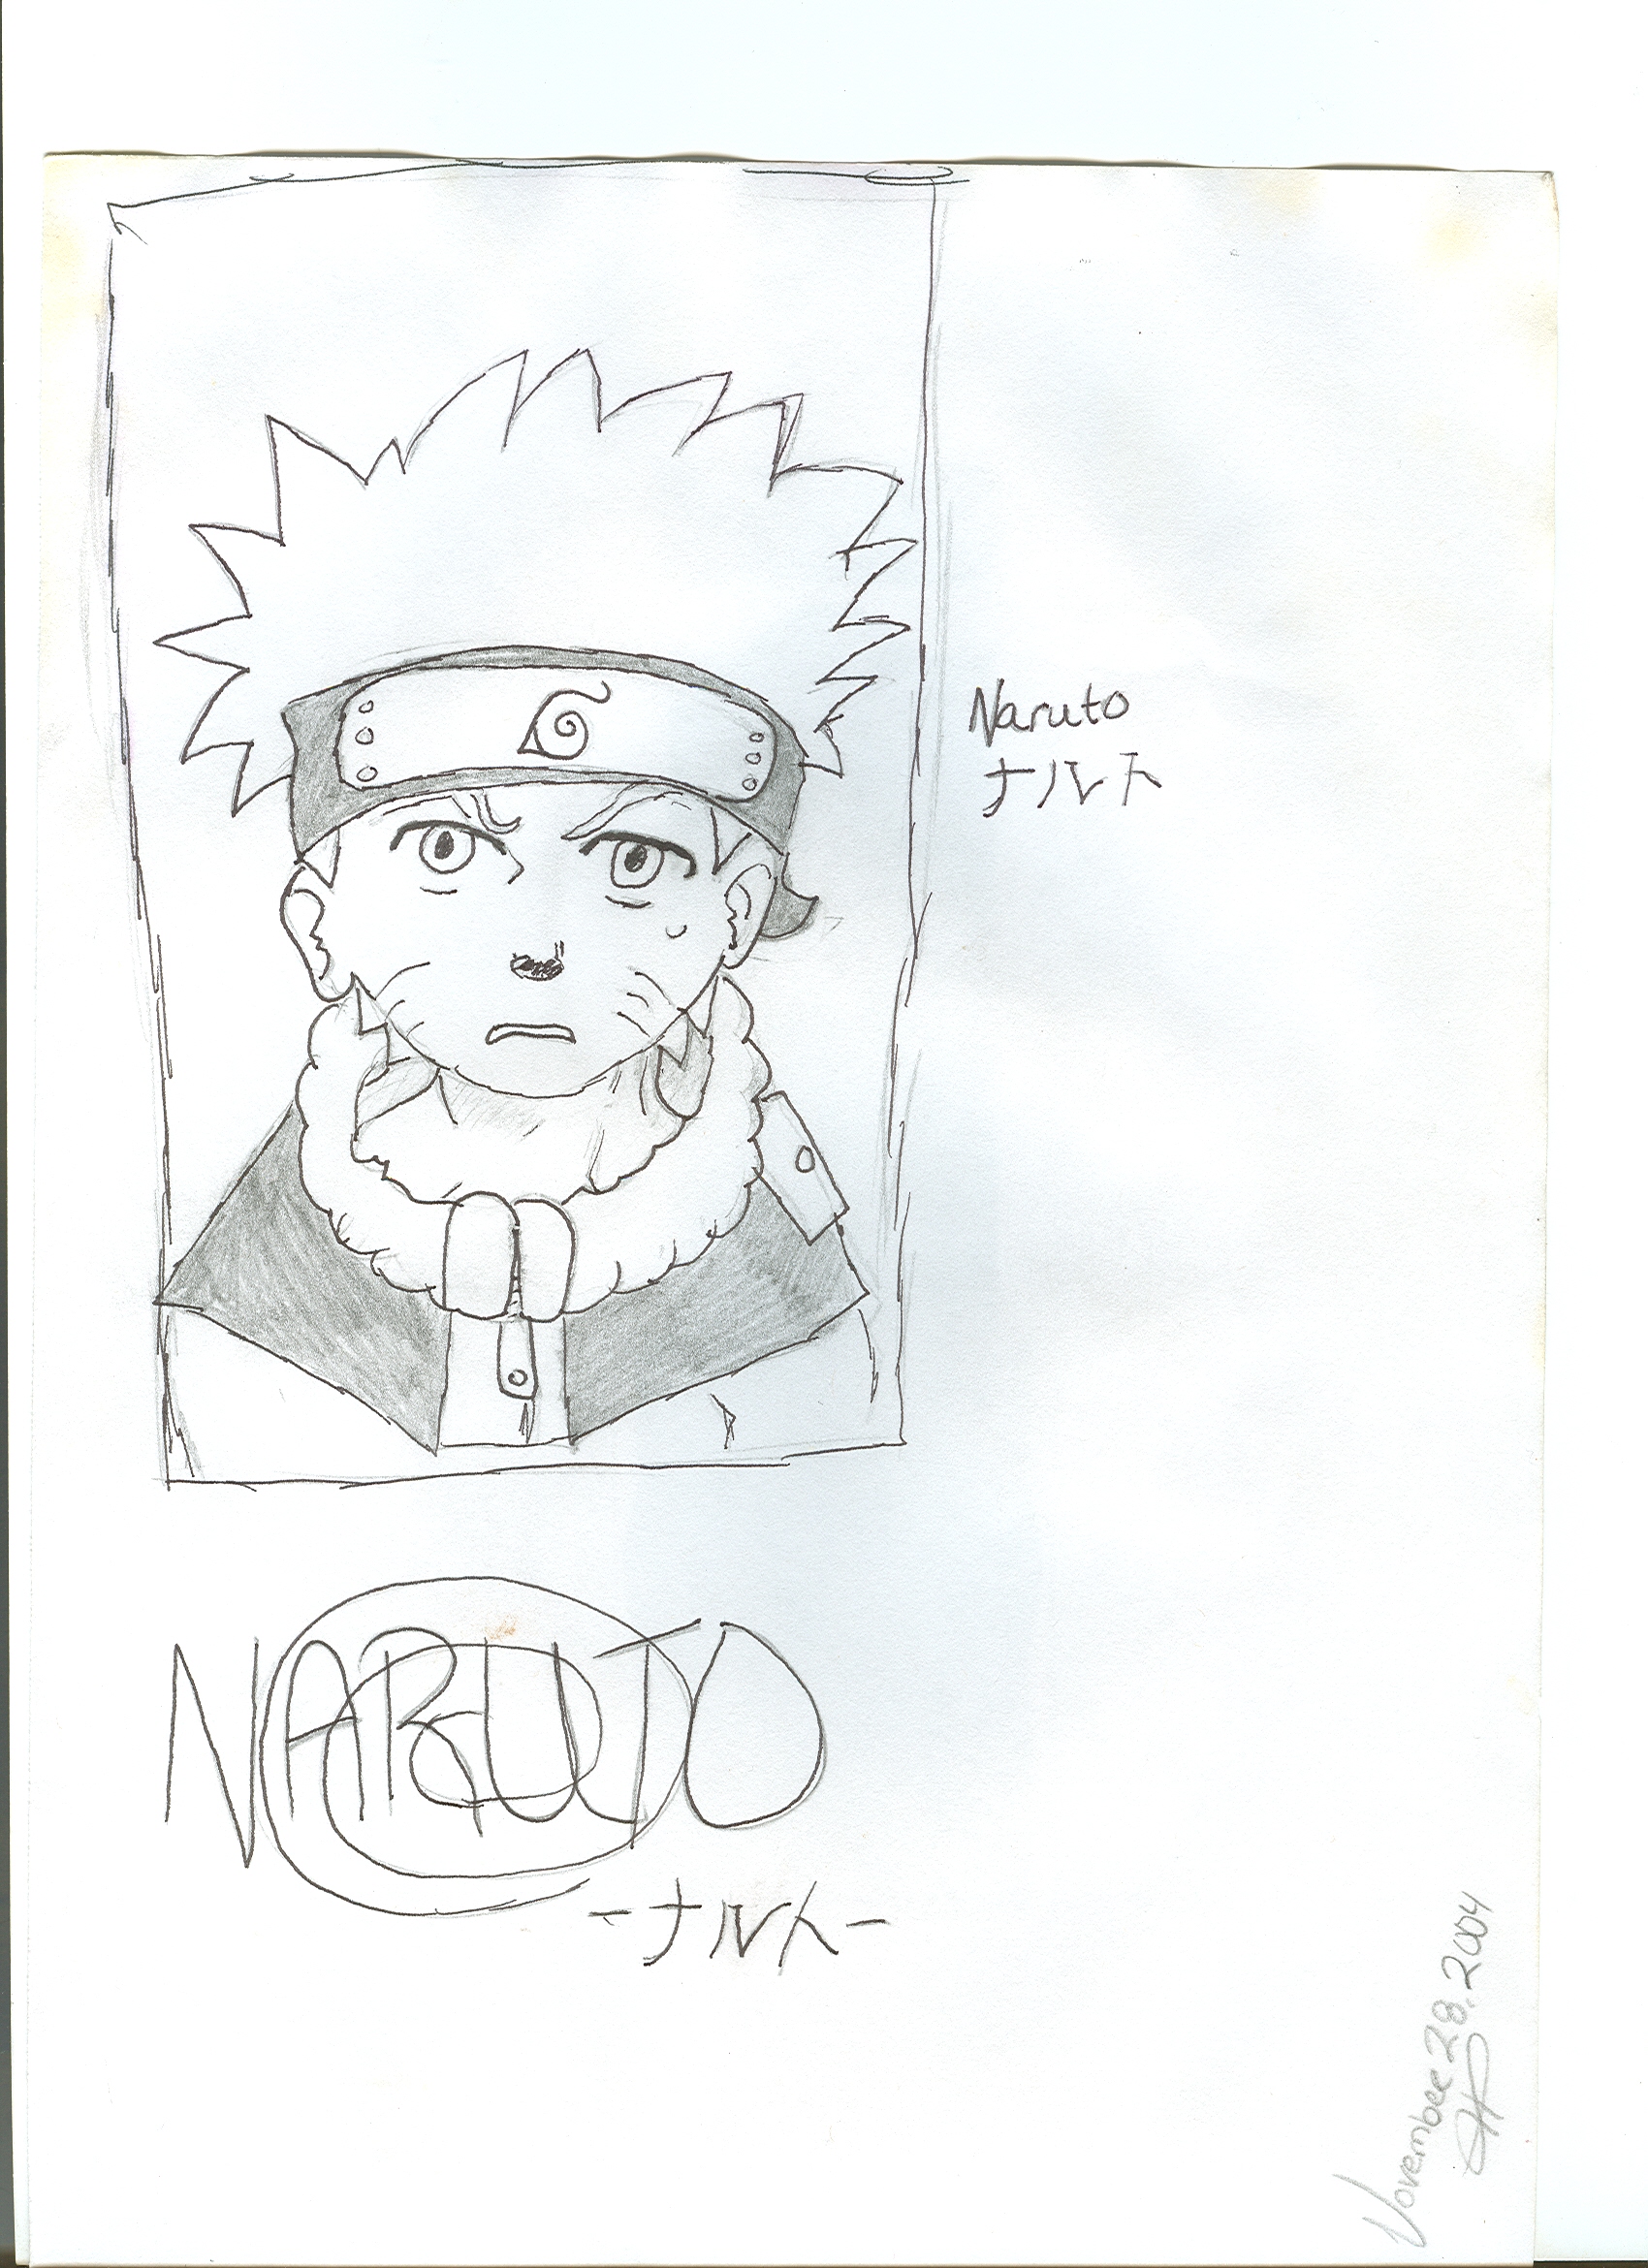 Naruto by Physco_Squirrel